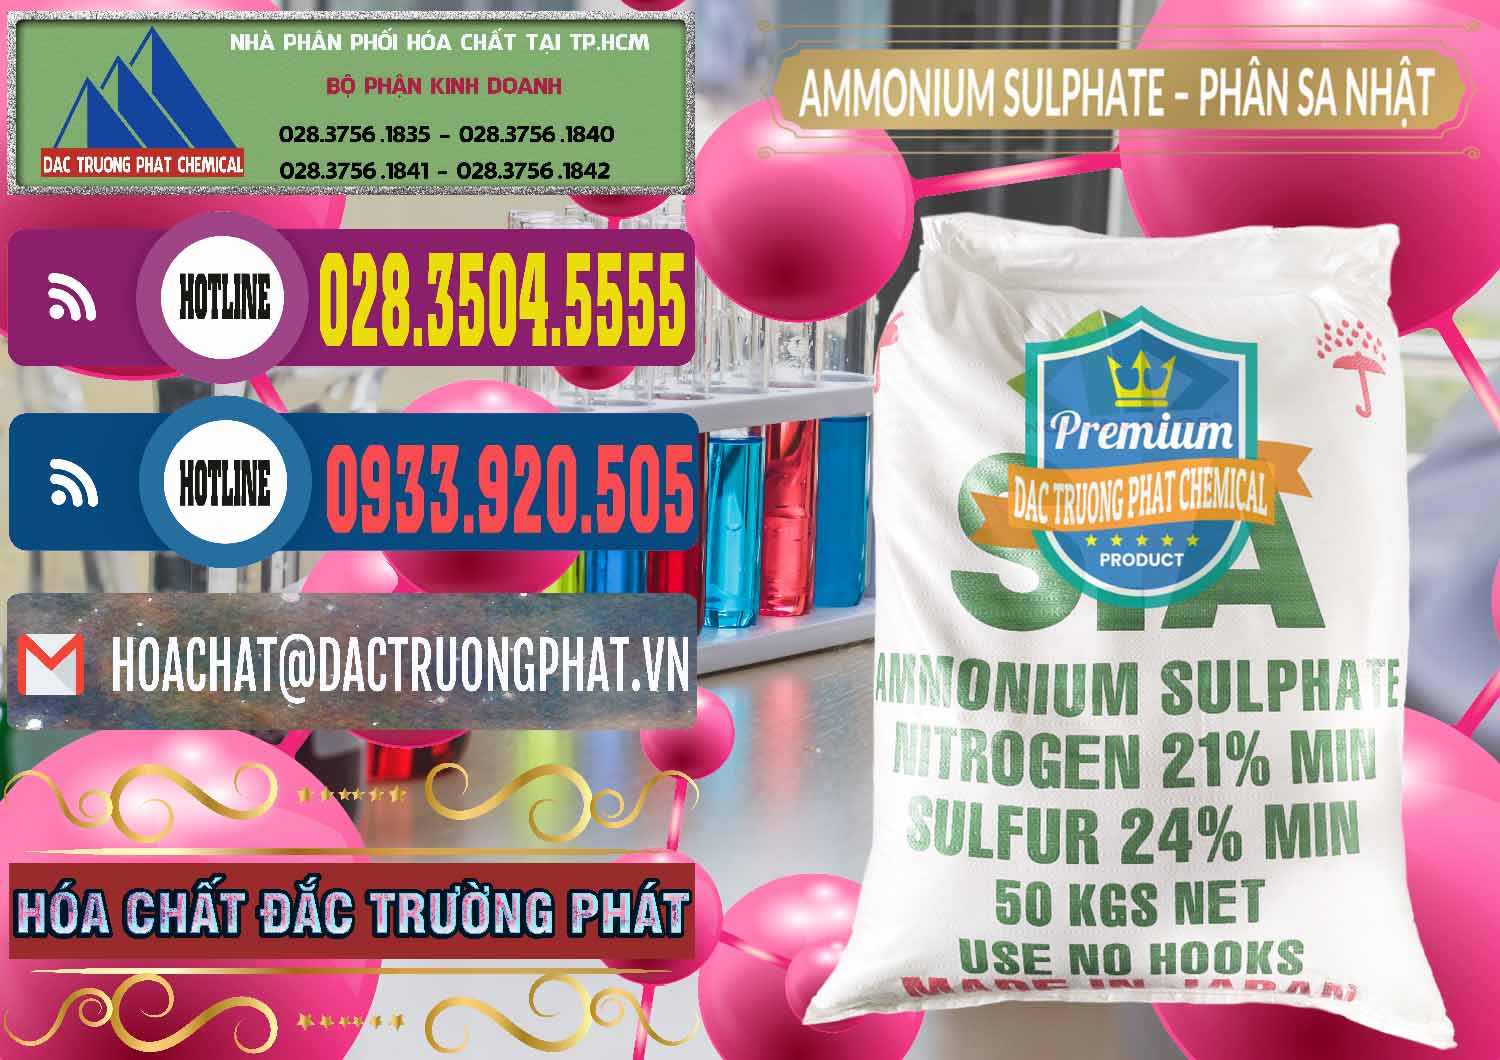 Công ty bán và cung ứng Ammonium Sulphate – Phân Sa Nhật Japan - 0023 - Nơi chuyên kinh doanh & phân phối hóa chất tại TP.HCM - muabanhoachat.com.vn